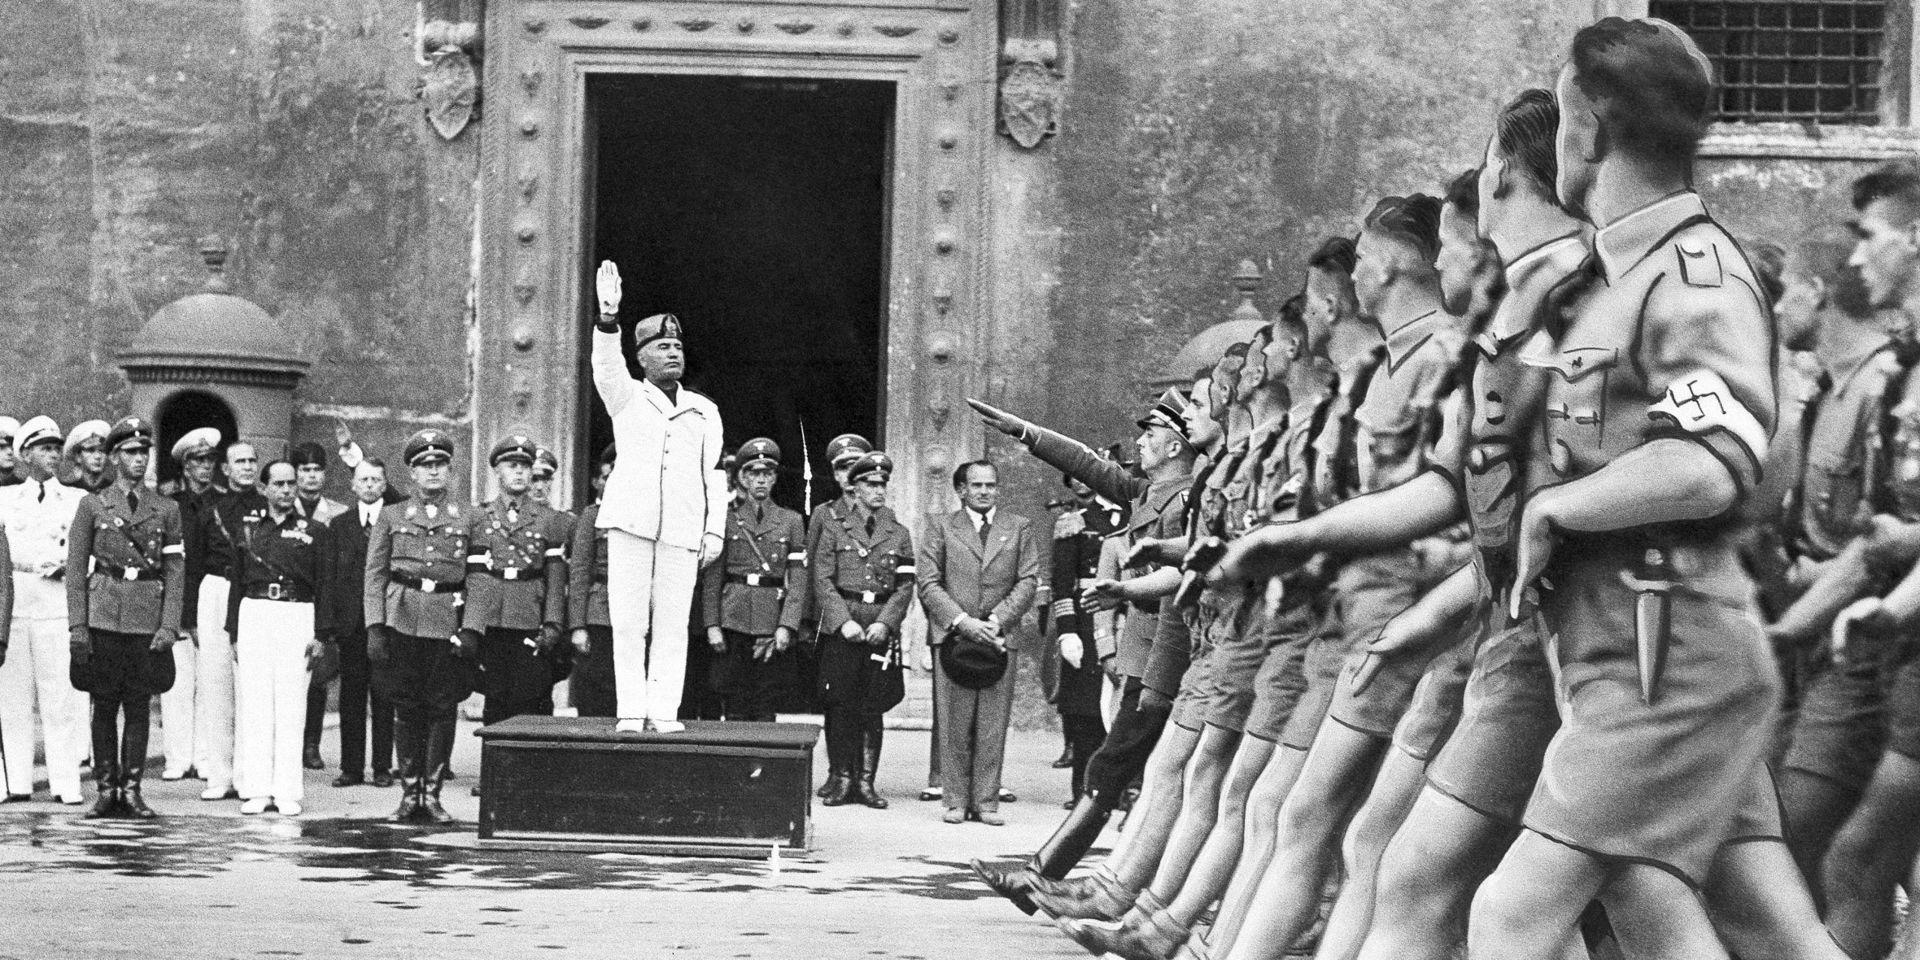 Den italienska fascistledaren Benito Mussolini lyfter sin hand i den fascistiska hälsningen medan medlemmar ur nazistiska Hitlerjugend parraderar förbi under ett besök i Rom i oktober 1936. 